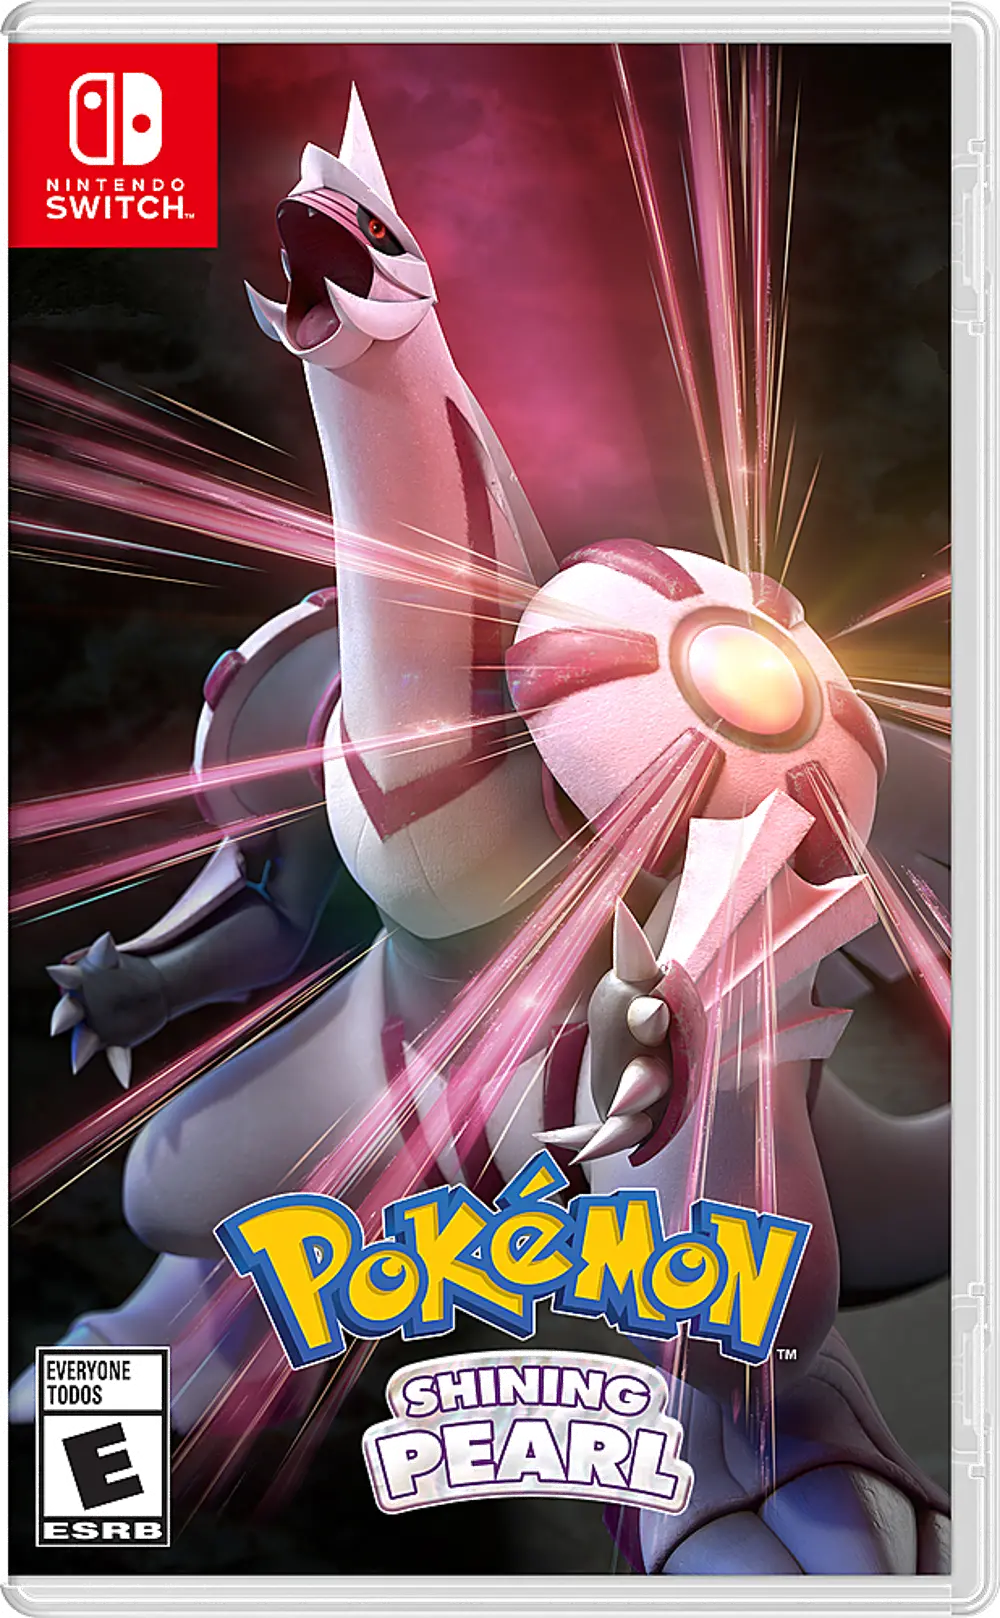 SWI/POKEMON_SPEARL Pokémon Shining Pearl - Nintendo Switch-1